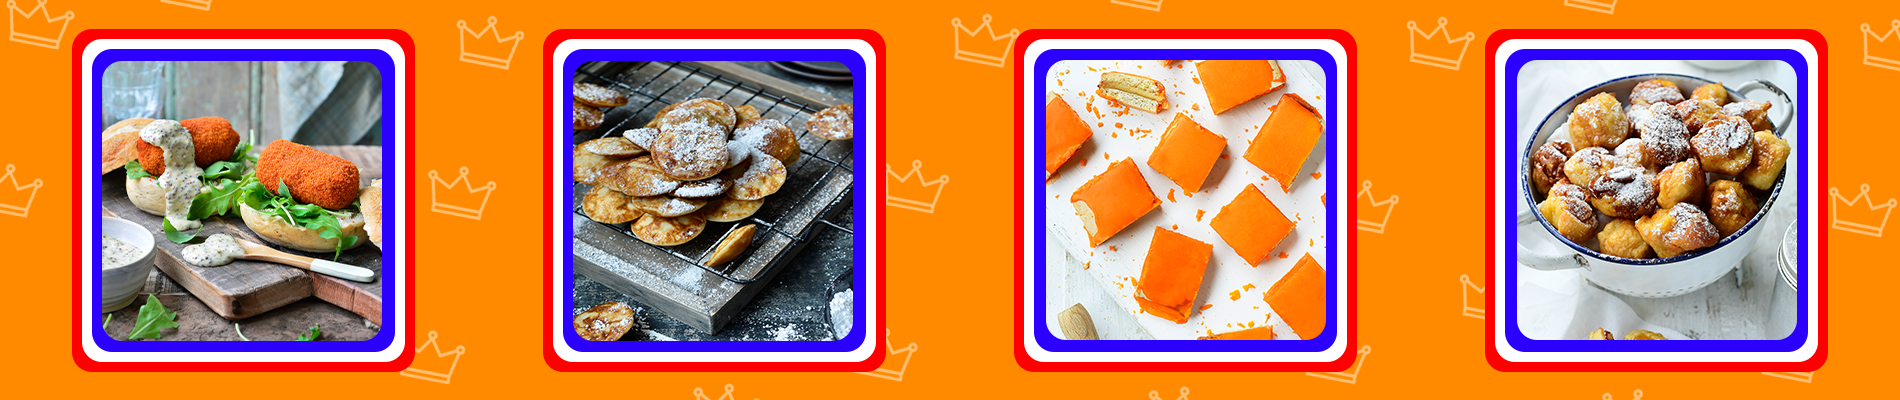 Deze week staat in teken van Koningsdag. Ontdek al ons recepten met een oranje tintje!